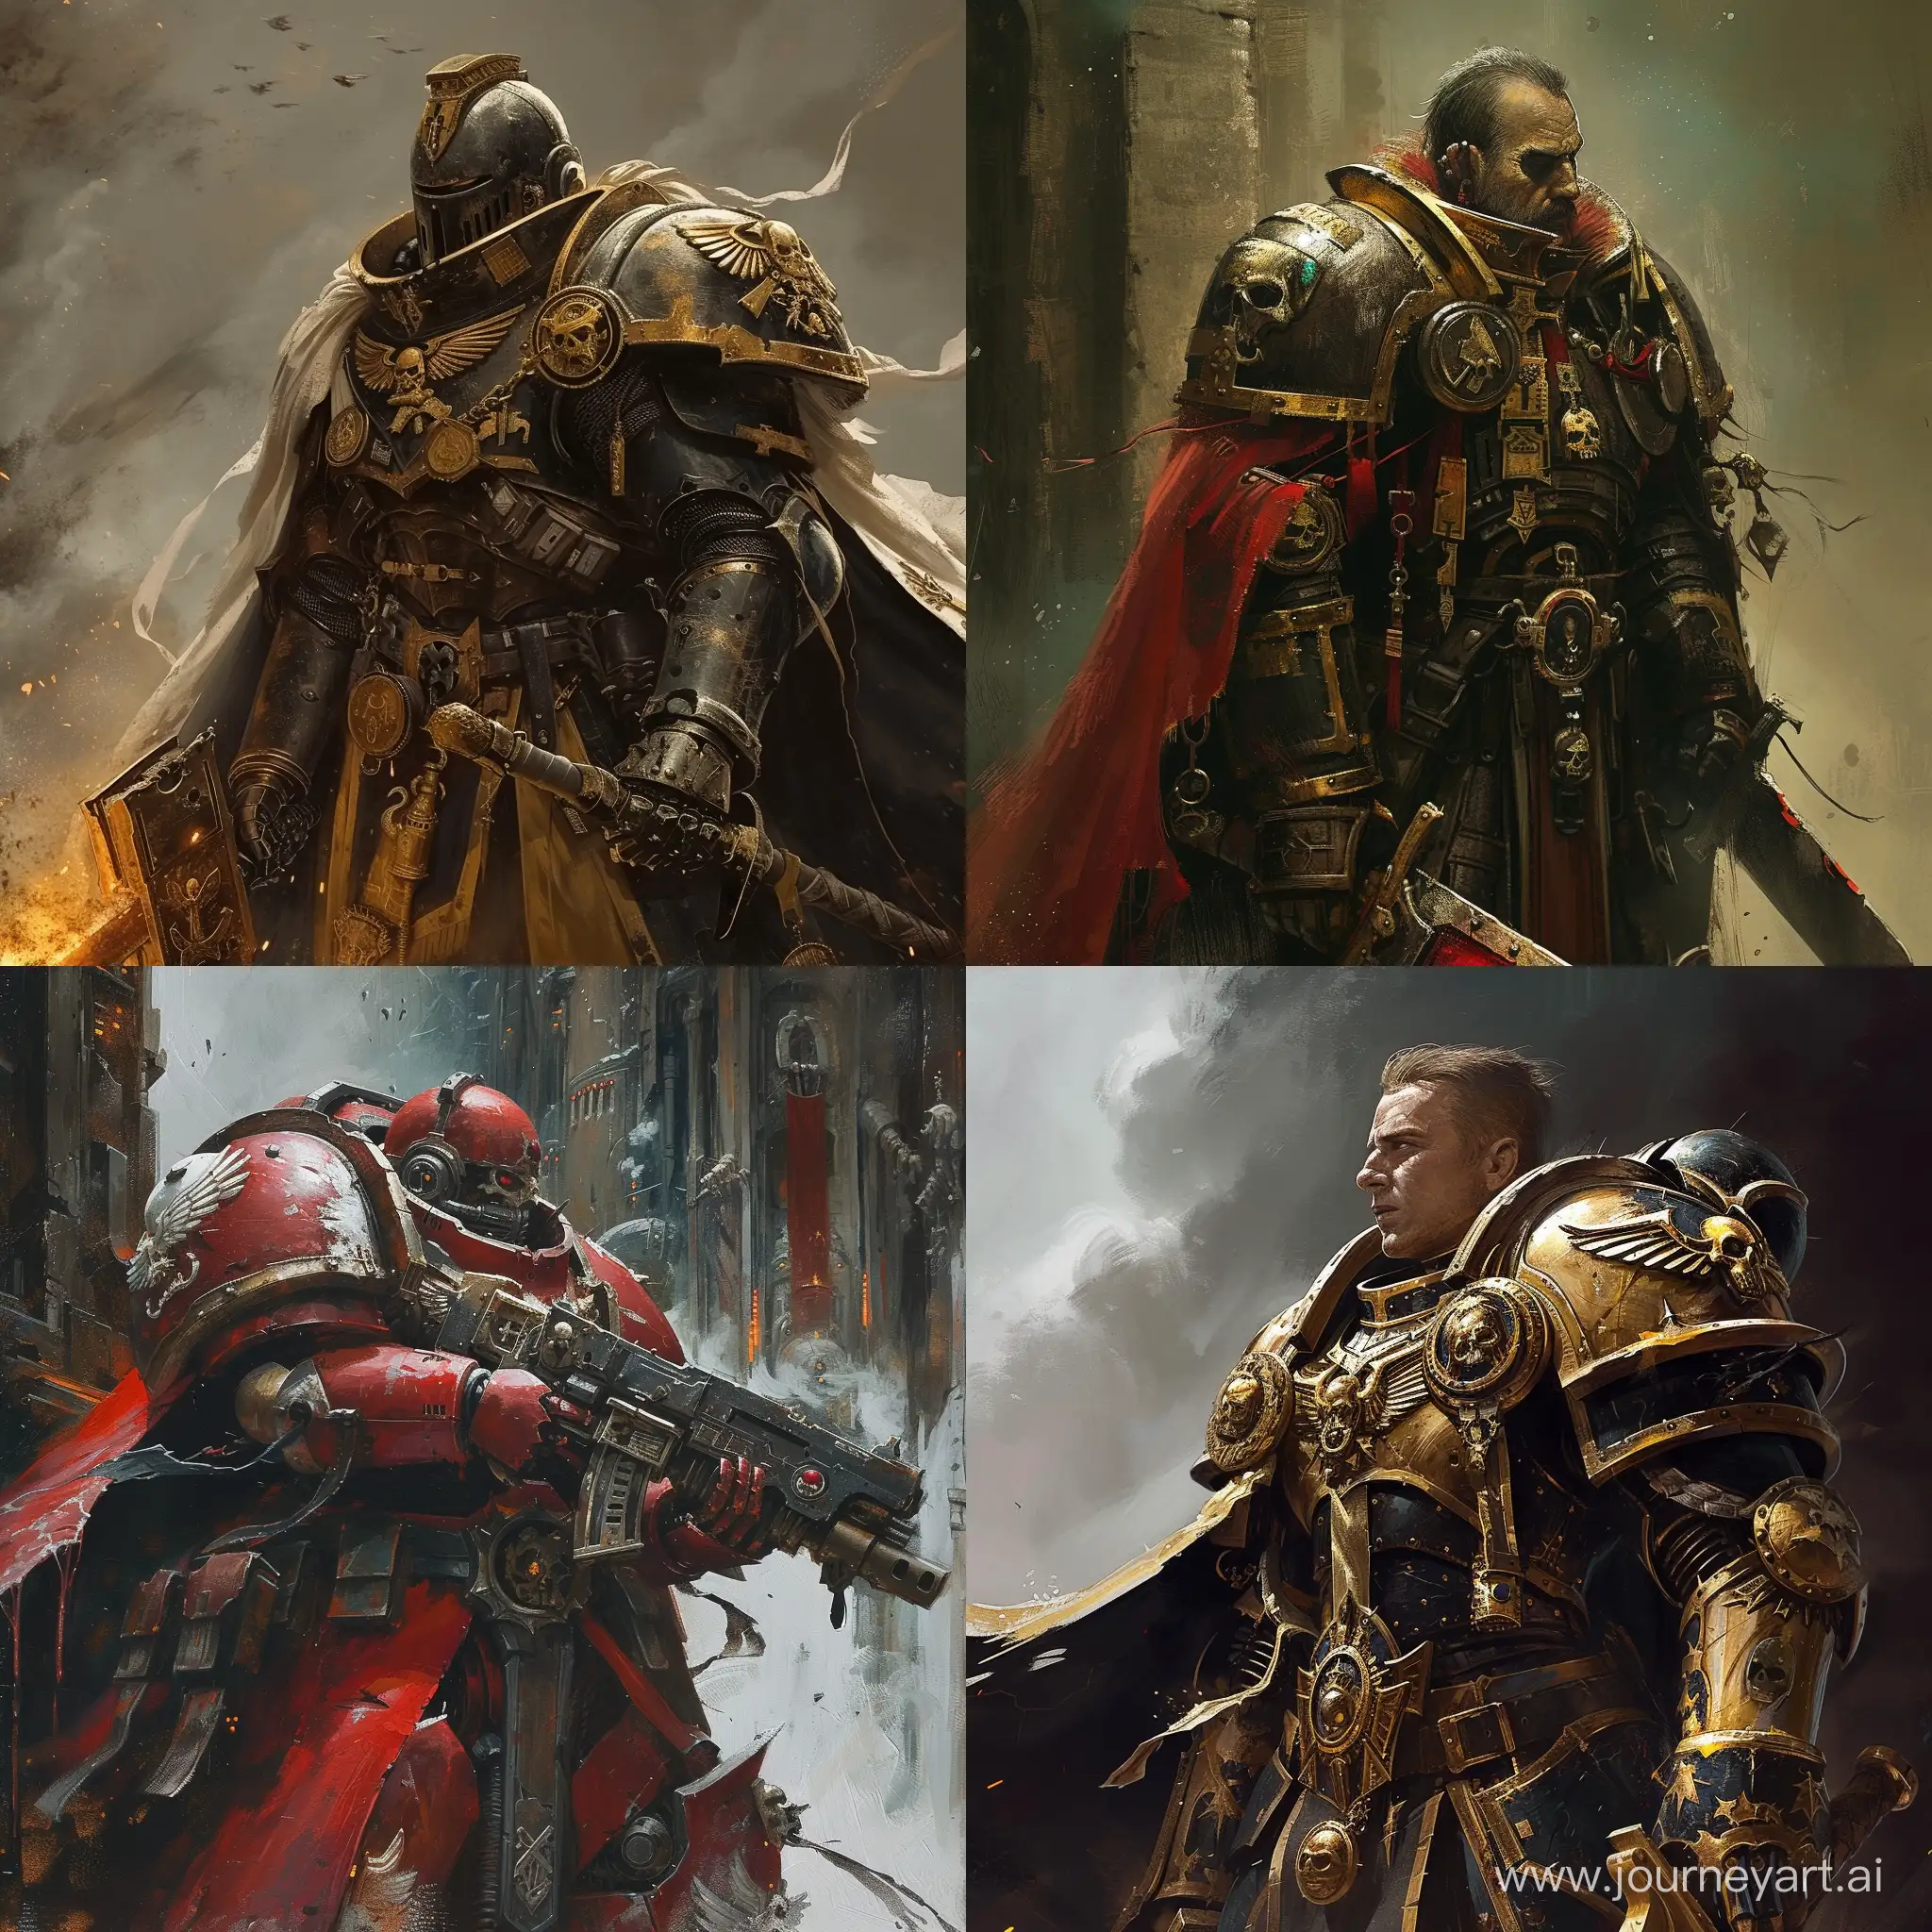 Vladimir-Zelensky-in-Warhammer-40000Inspired-Armor